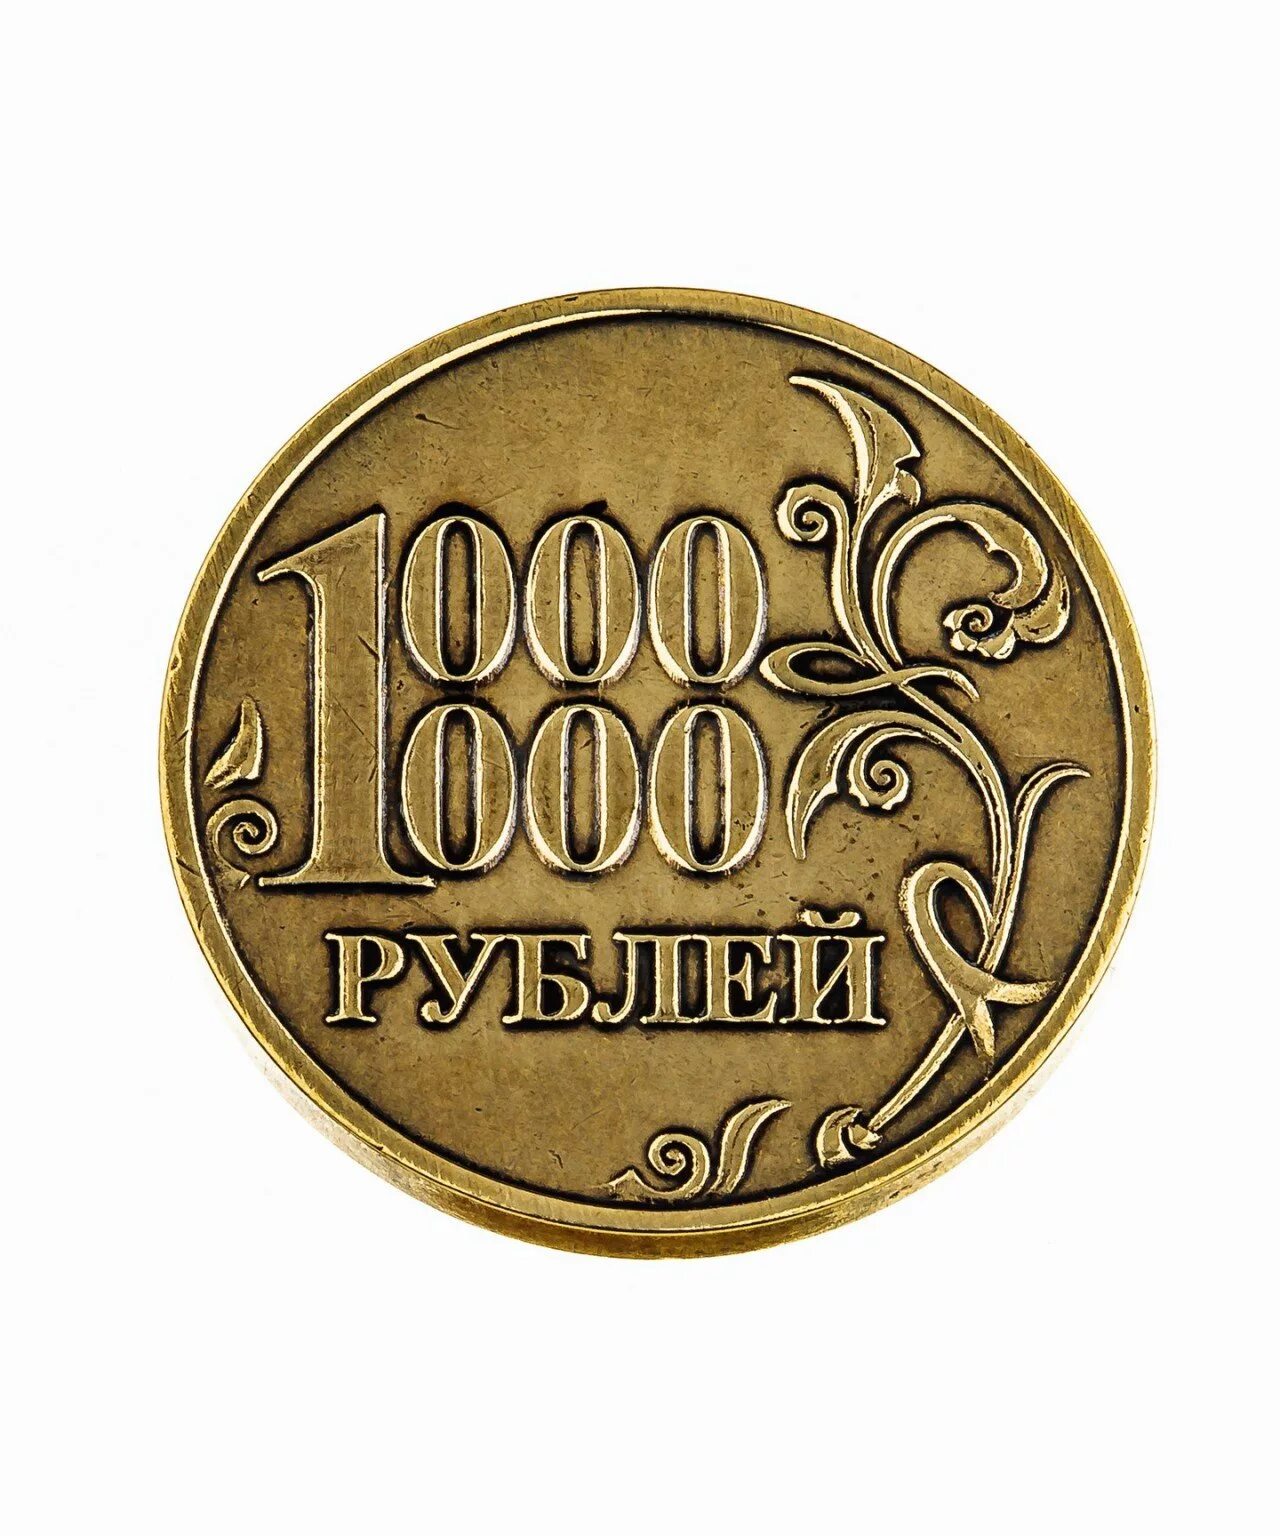 Цена 1000000 рублей. Монета миллион рублей. Монета 1 милион рубле й. Сонета 1 миллион рублей. Монета 1 миллион рублей.